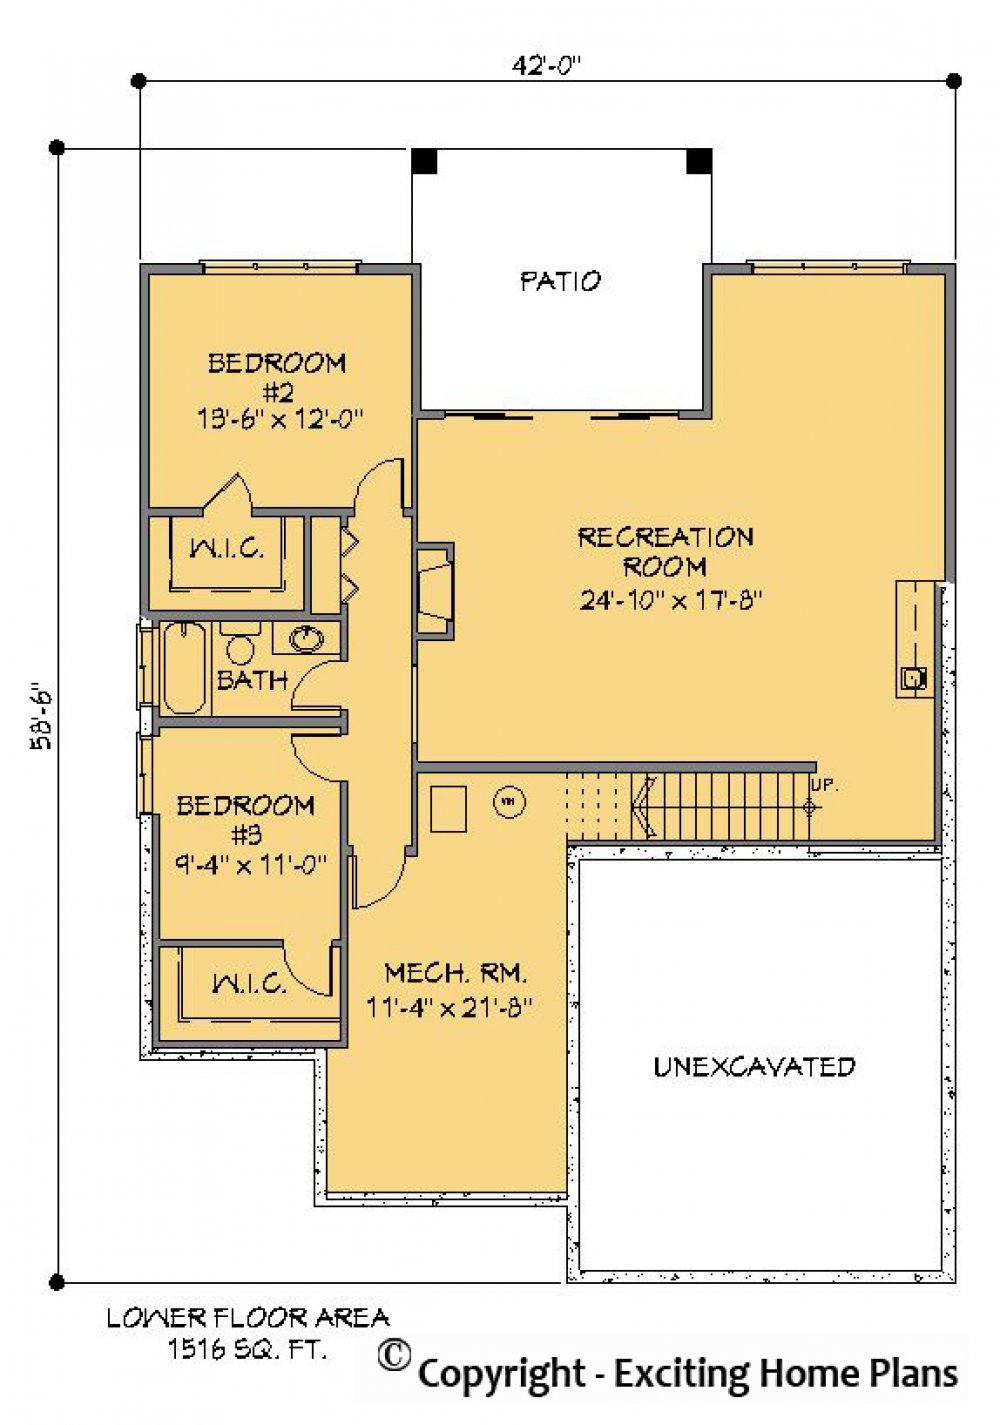 House Plan E1200-10 Lower Floor Plan